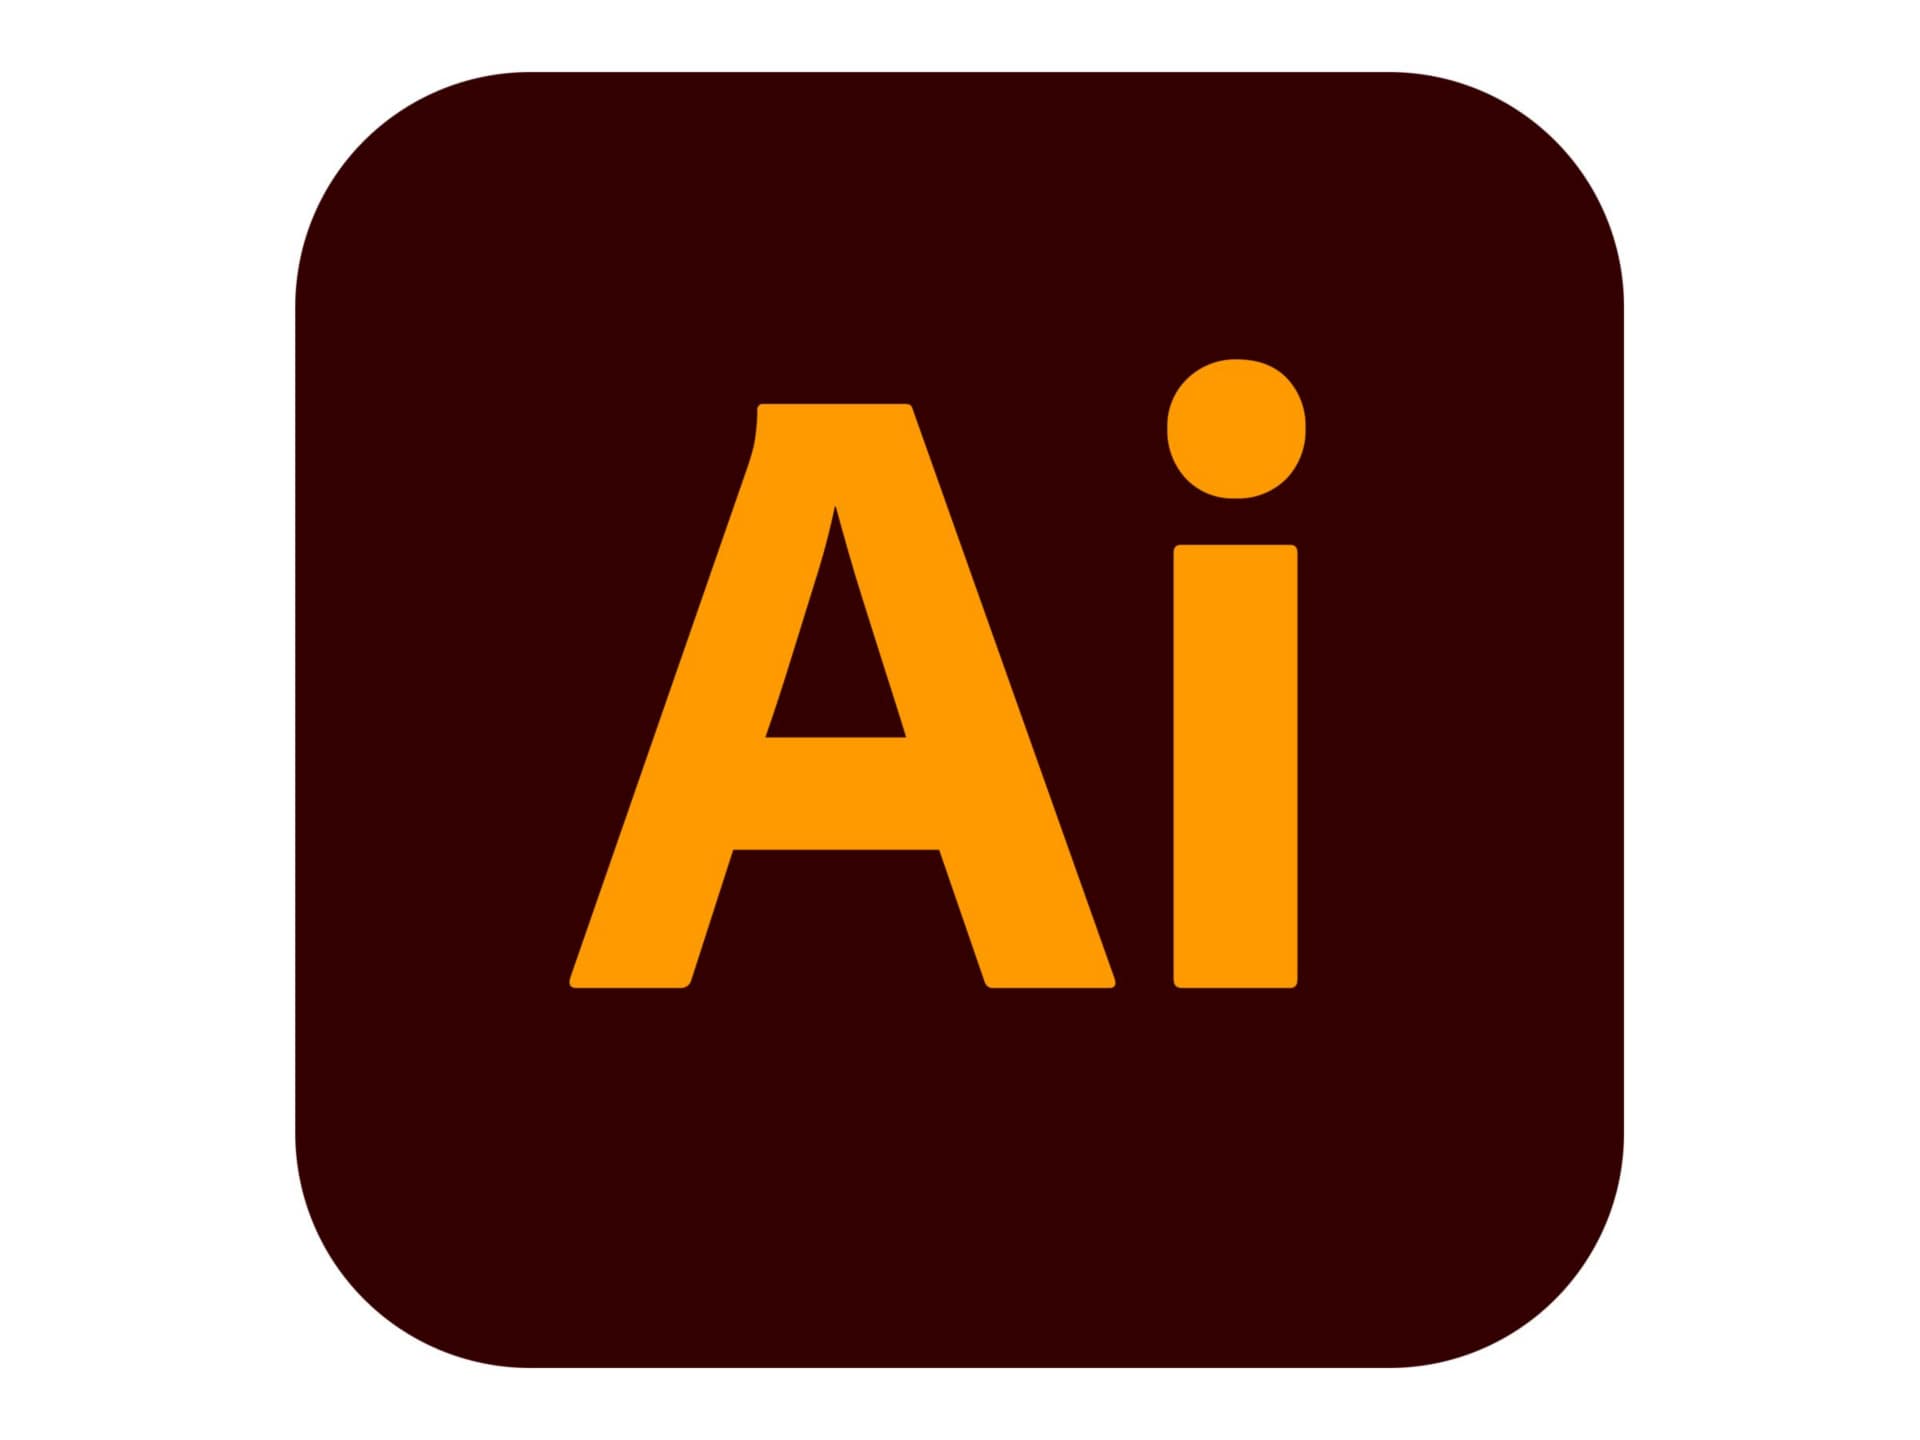 Adobe Illustrator CC for Enterprise - Subscription New (4 months) - 1 named user